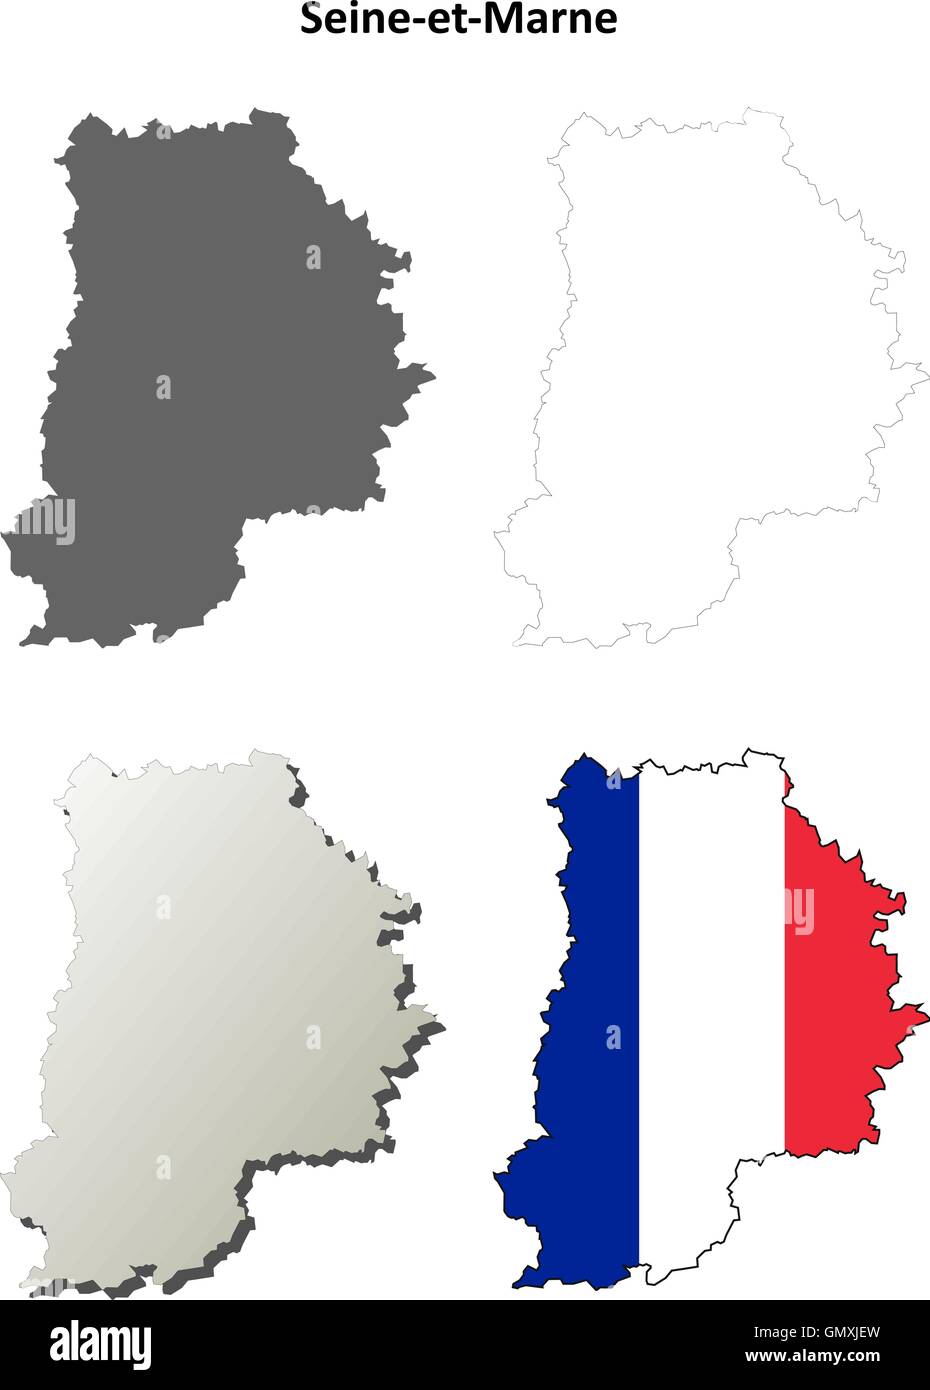 Seine-et-Marne, Ile-de-France outline map set Stock Vector